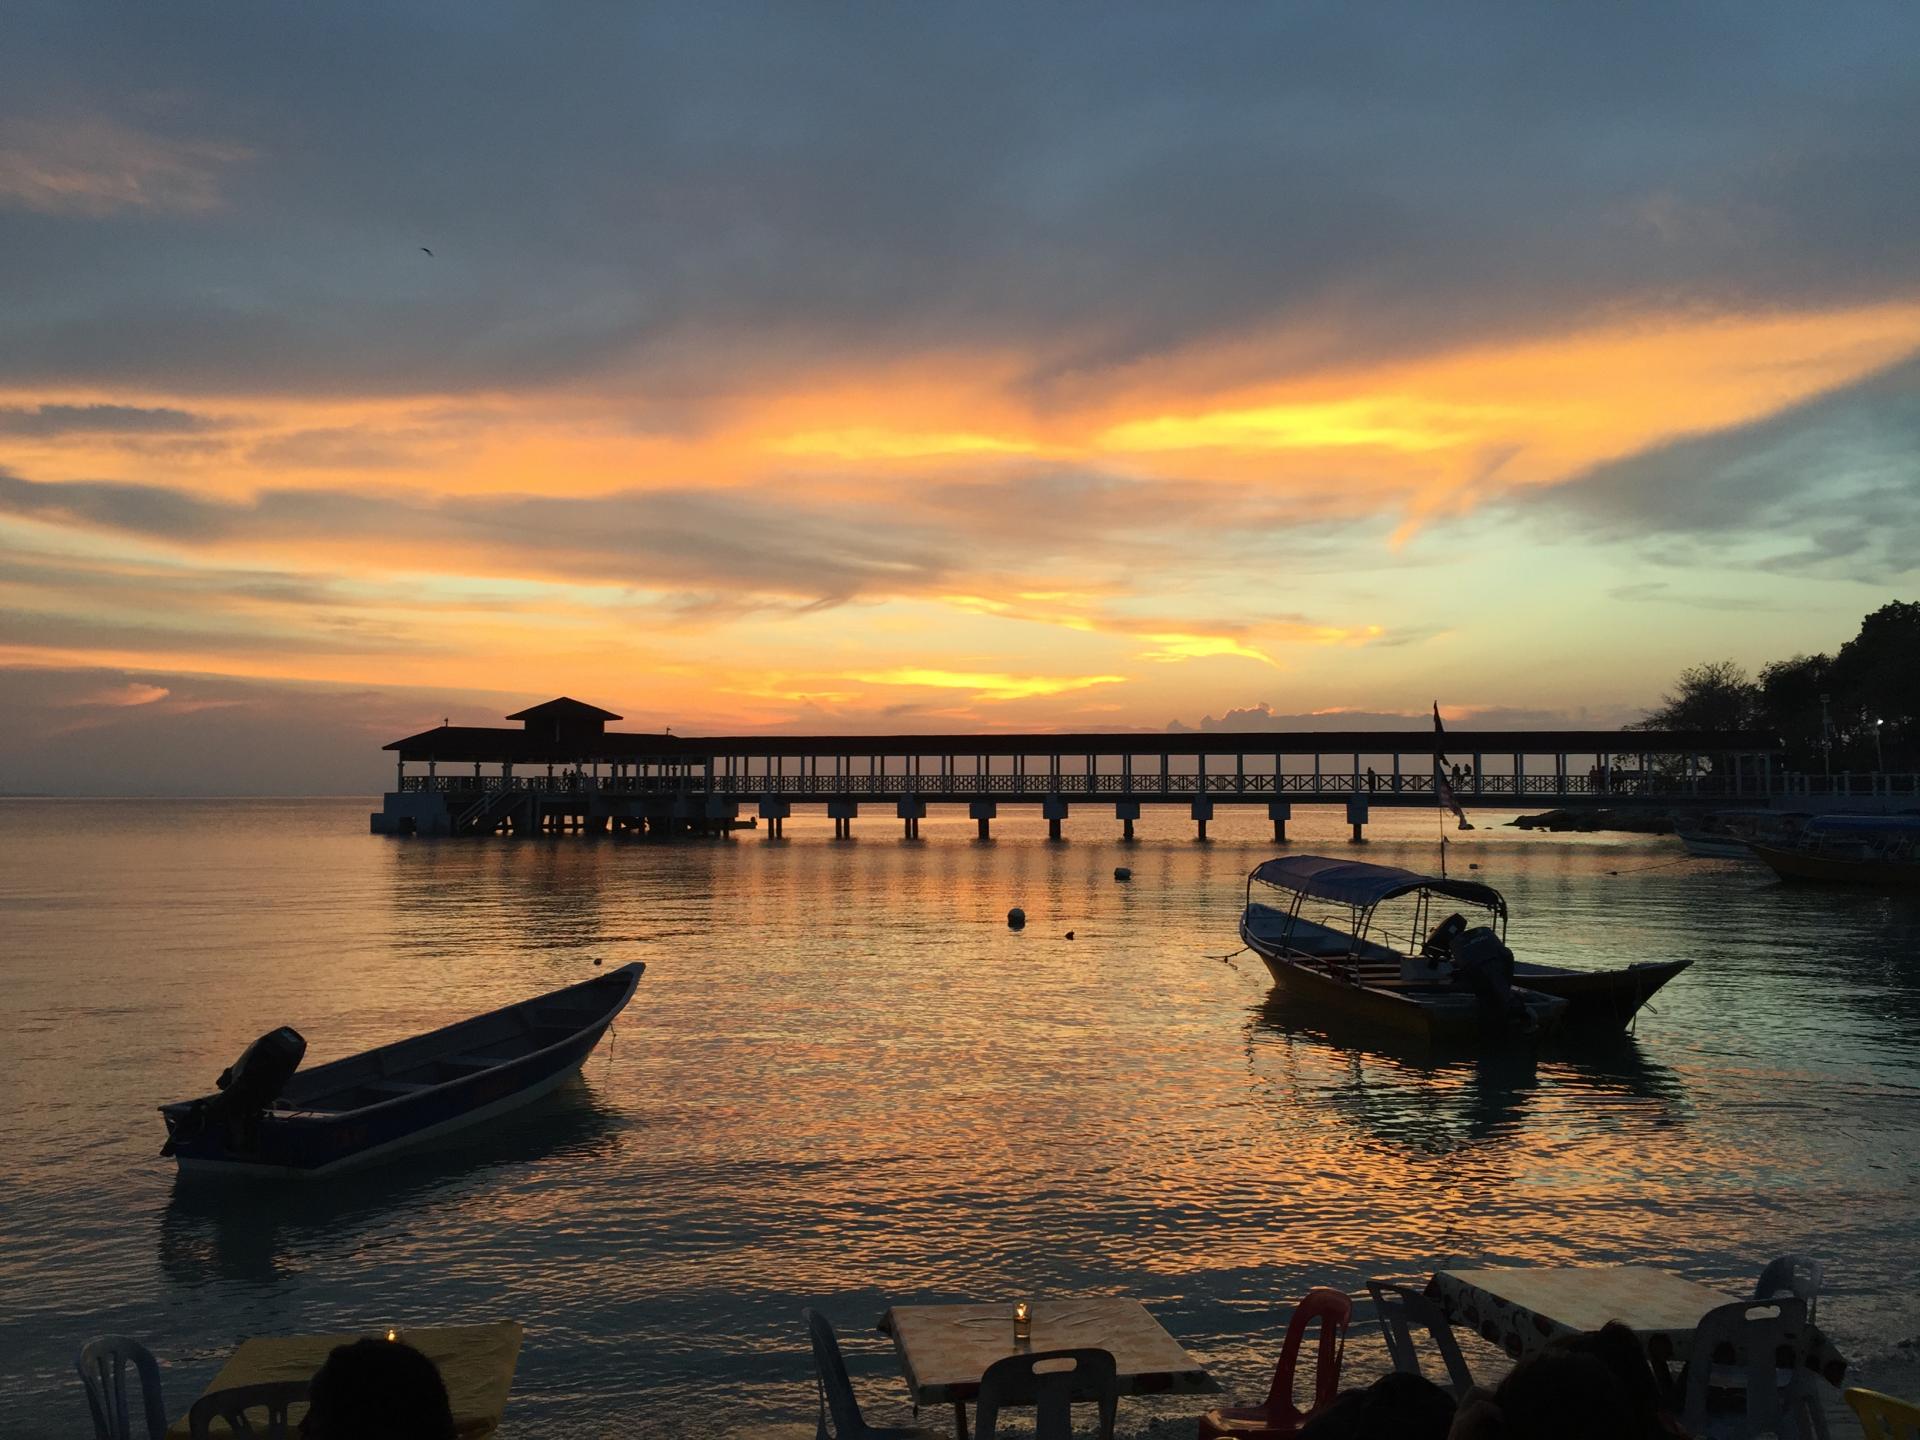 Notre premier coucher de soleil, Perhentian Island Kecil, Malaisie, Mars 2016